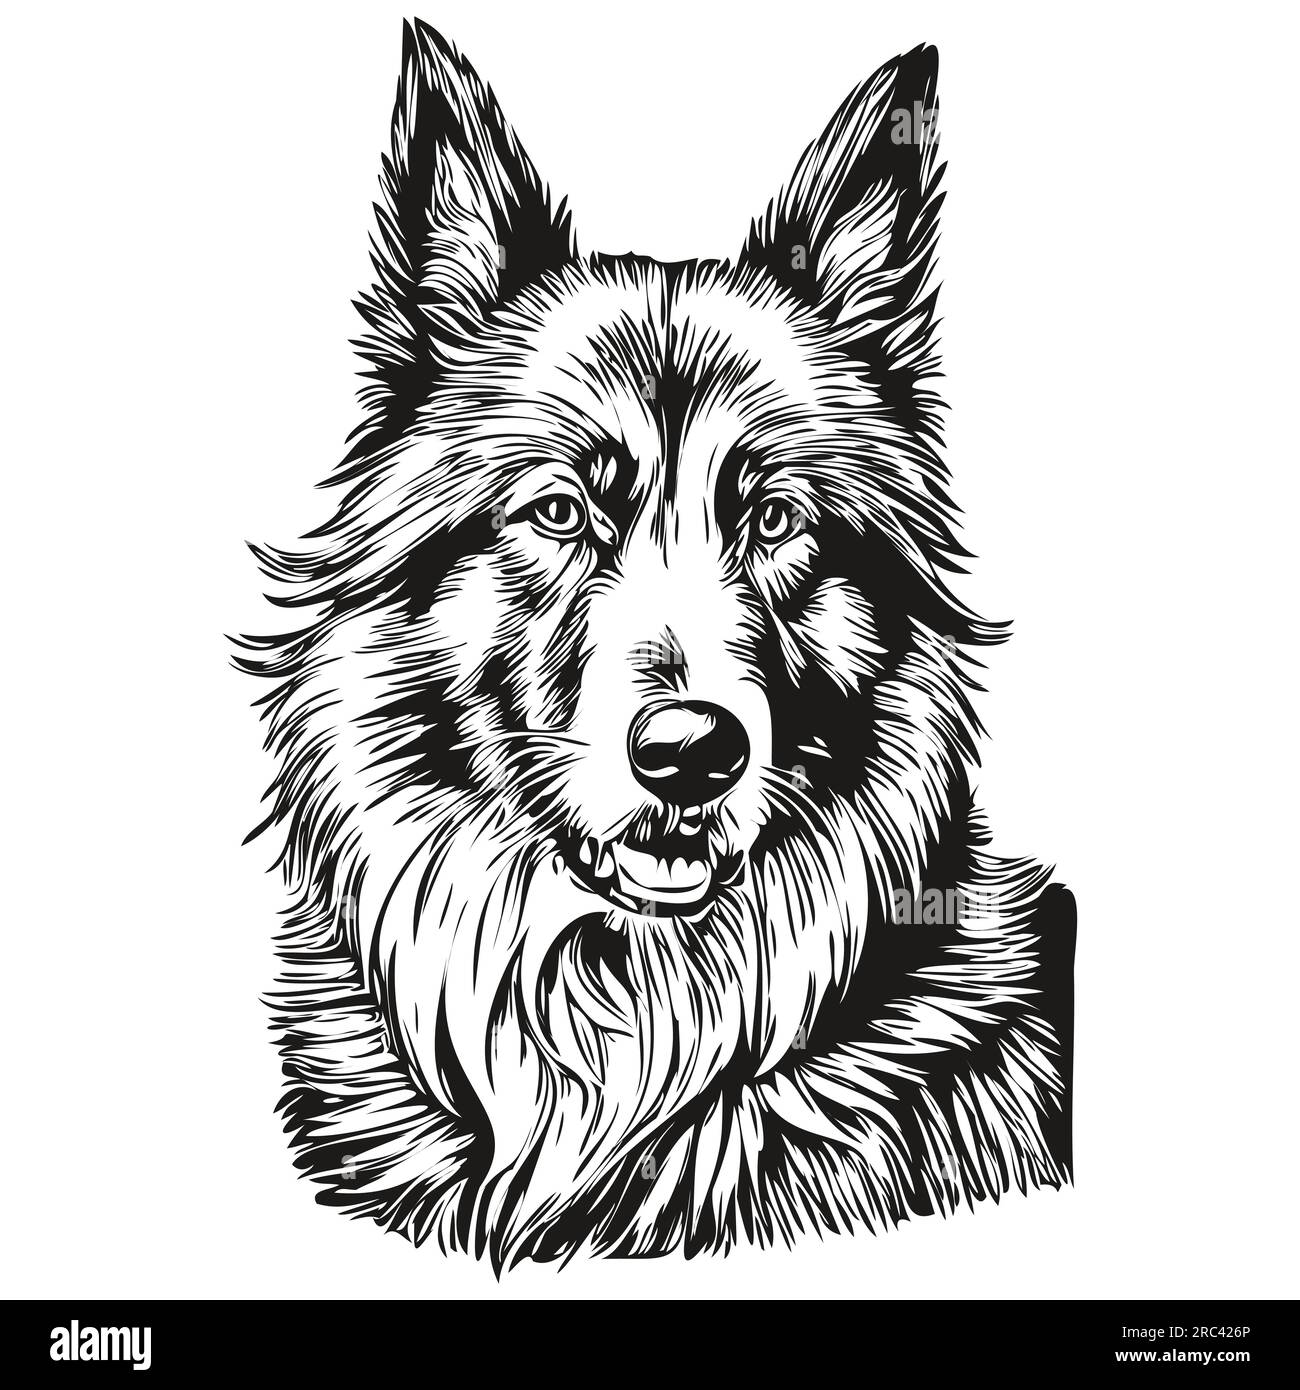 Dessin au trait de race de chien belge Tervuren, clip art animal dessin à la main vecteur noir et blanc Illustration de Vecteur